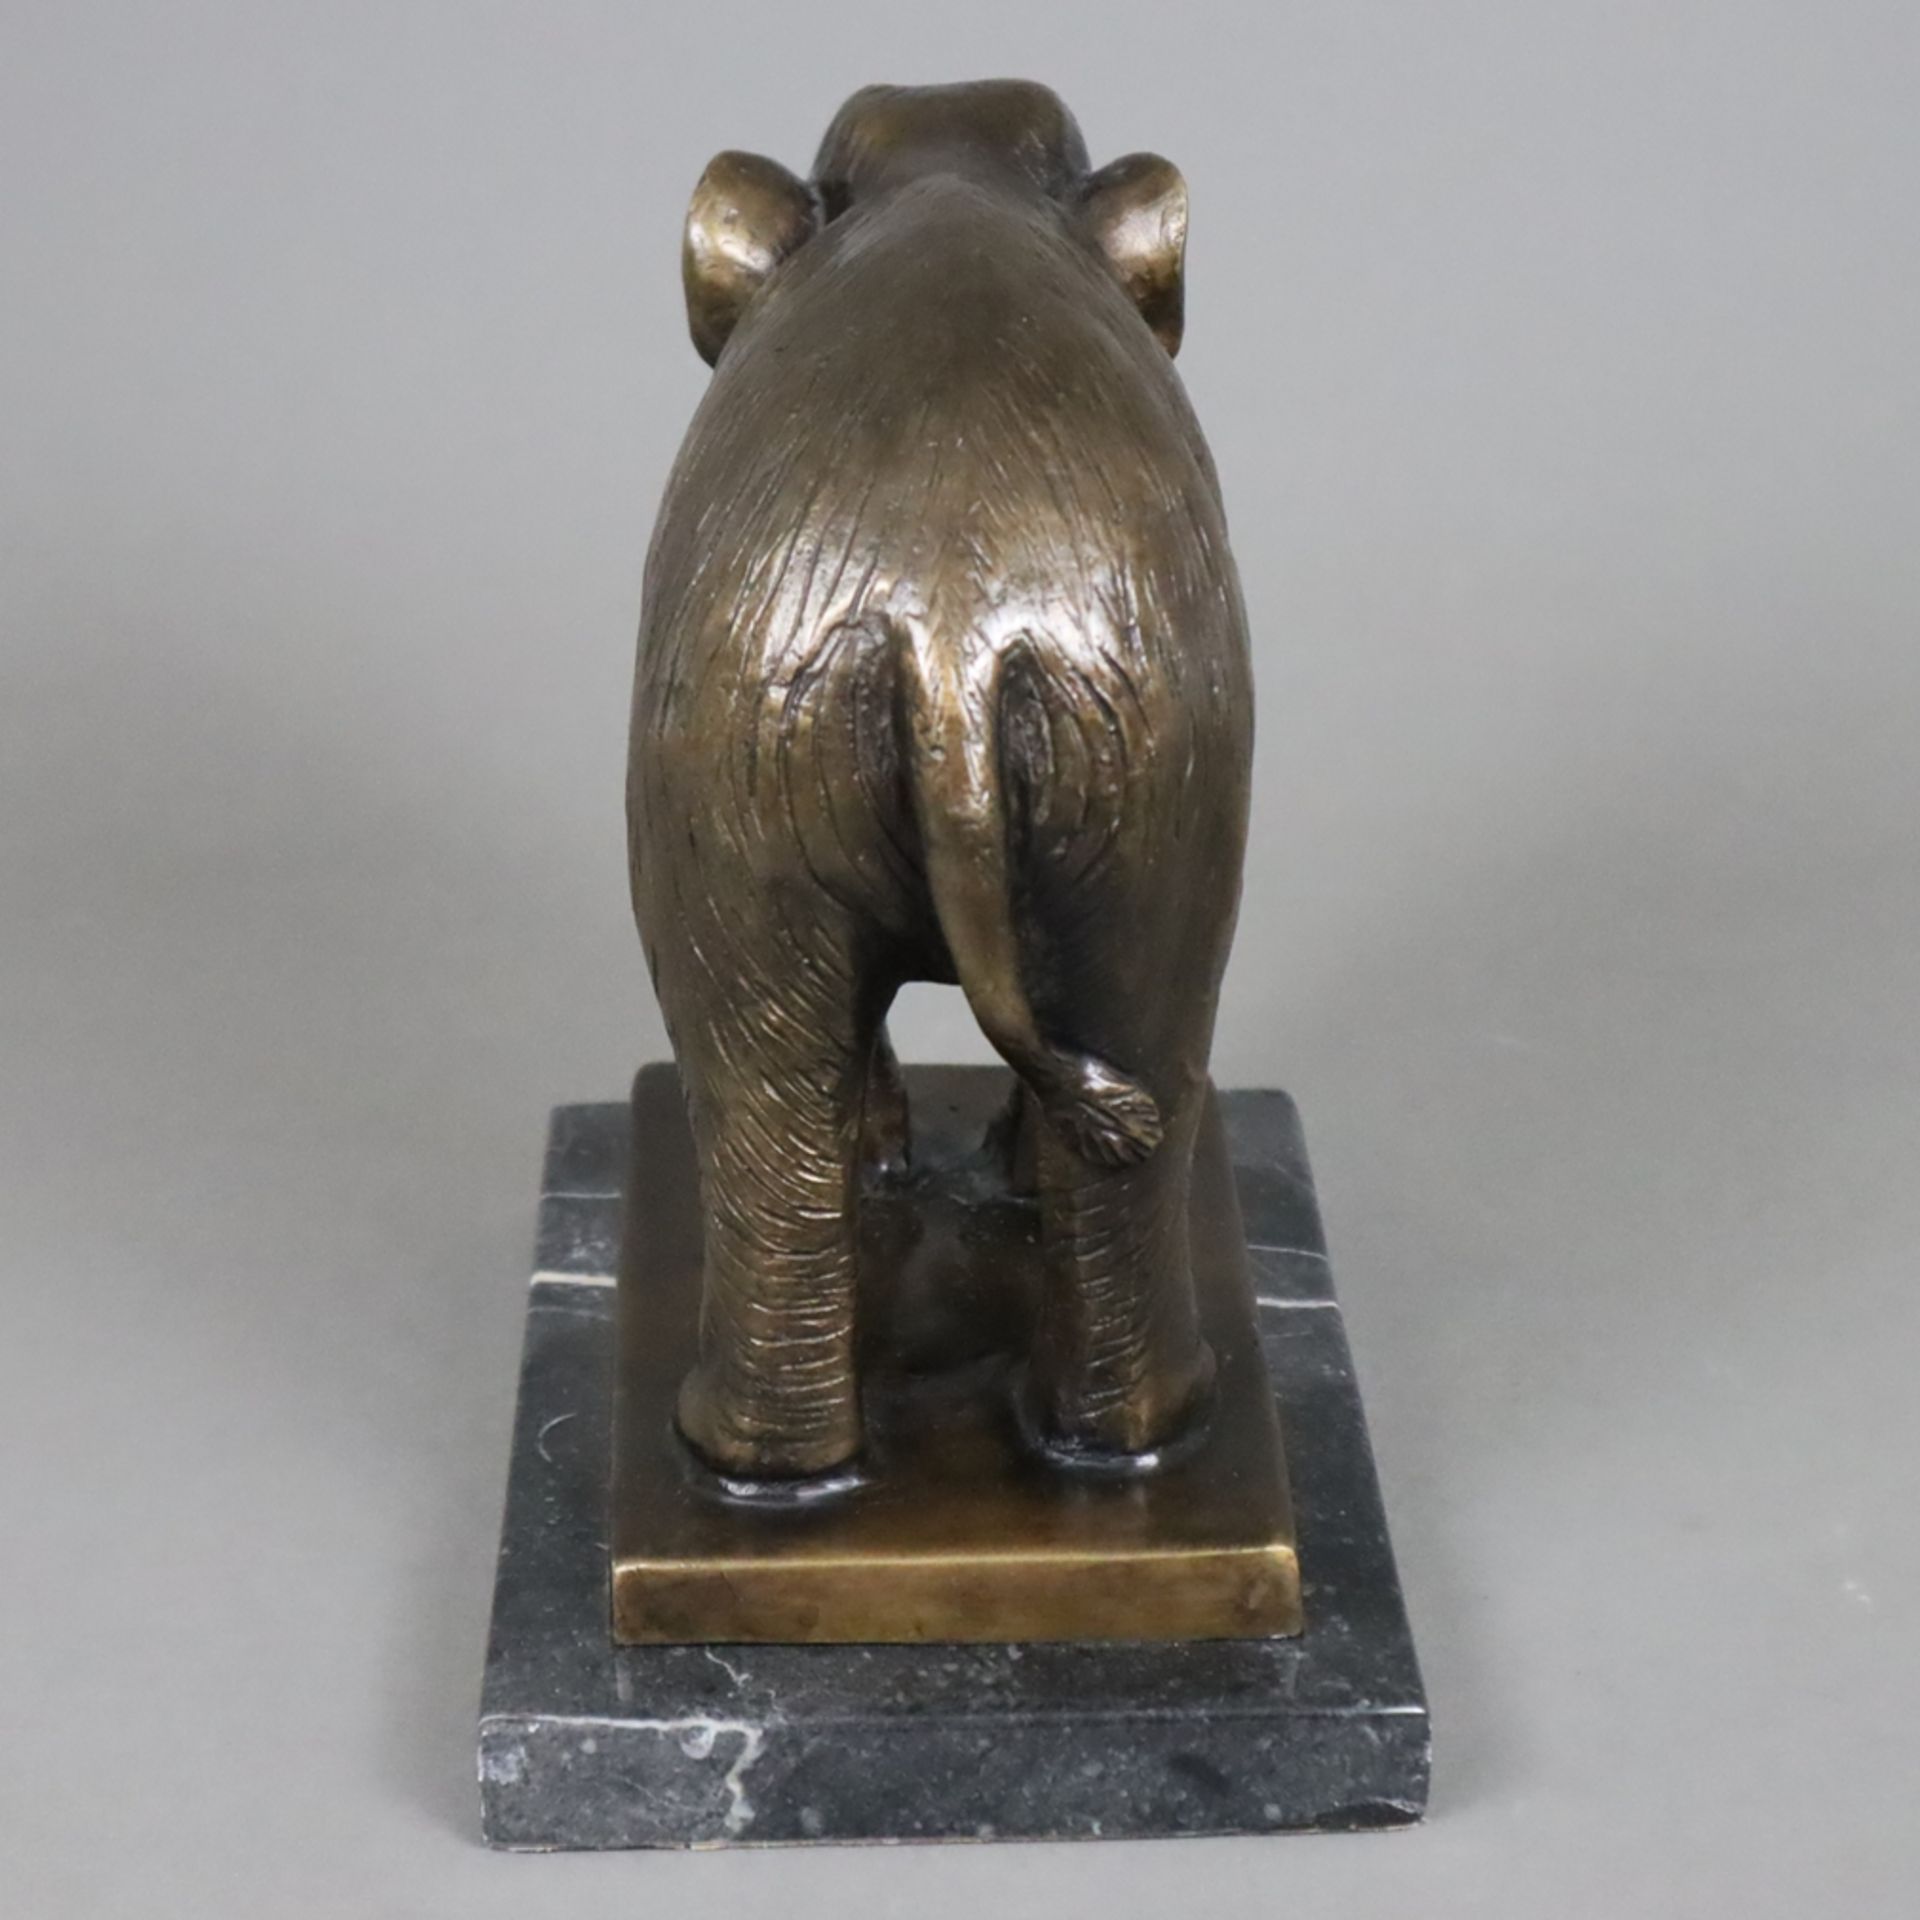 Tierfigur "Stehender Elefant" - Bronze, braun patiniert, naturalistische Darstellung auf rechteckig - Image 4 of 6